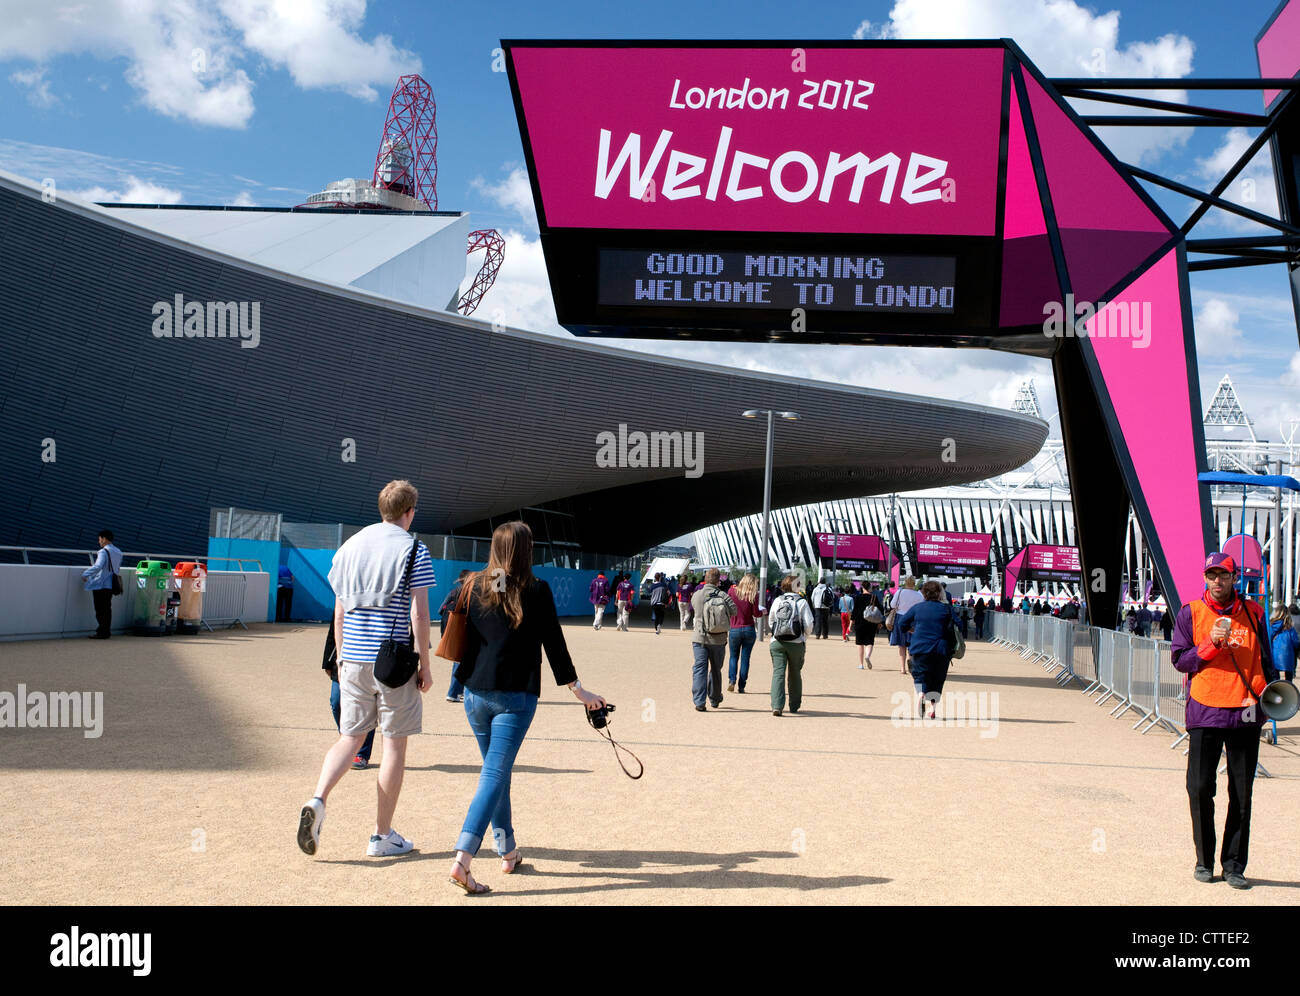 Les Jeux Olympiques de 2012 à Londres - panneau de bienvenue à l'entrée du Parc olympique Banque D'Images